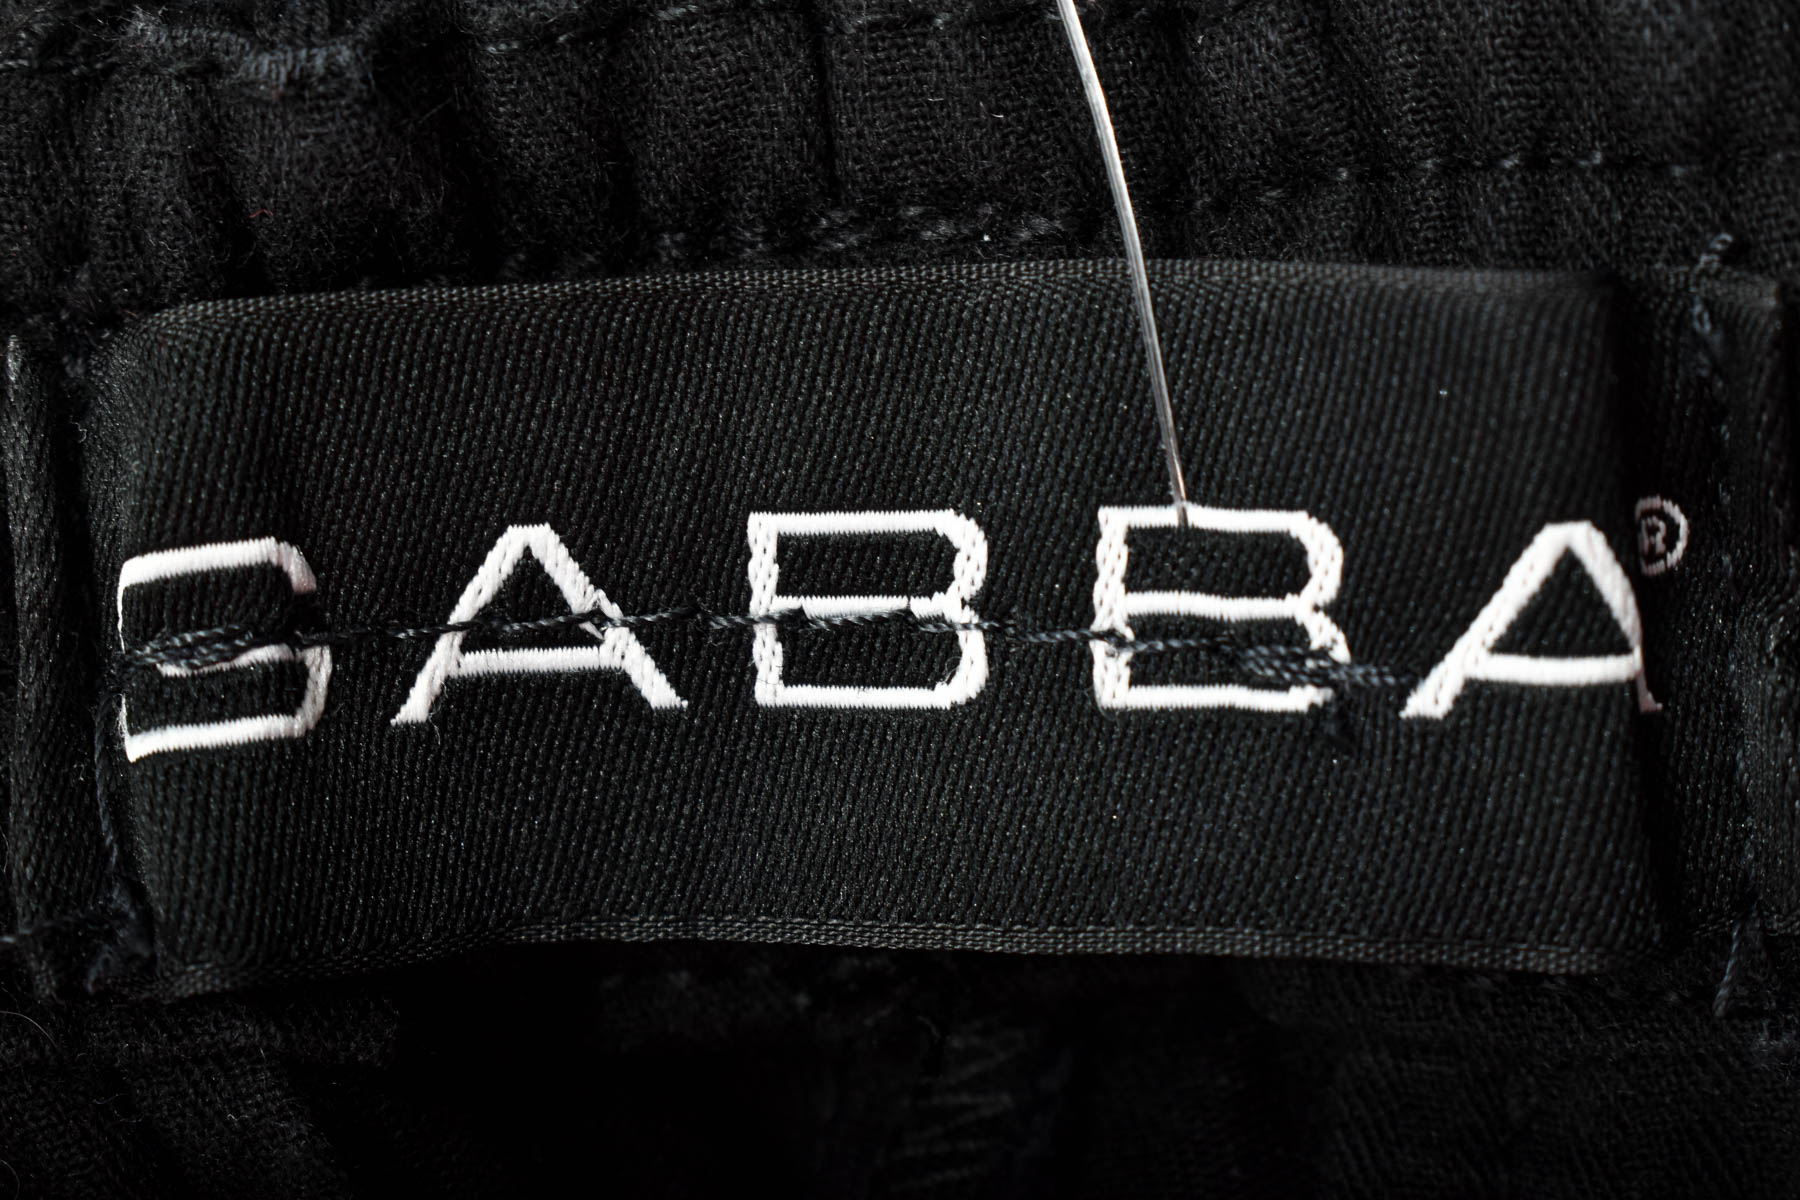 Pantalon pentru bărbați - Gabba - 2